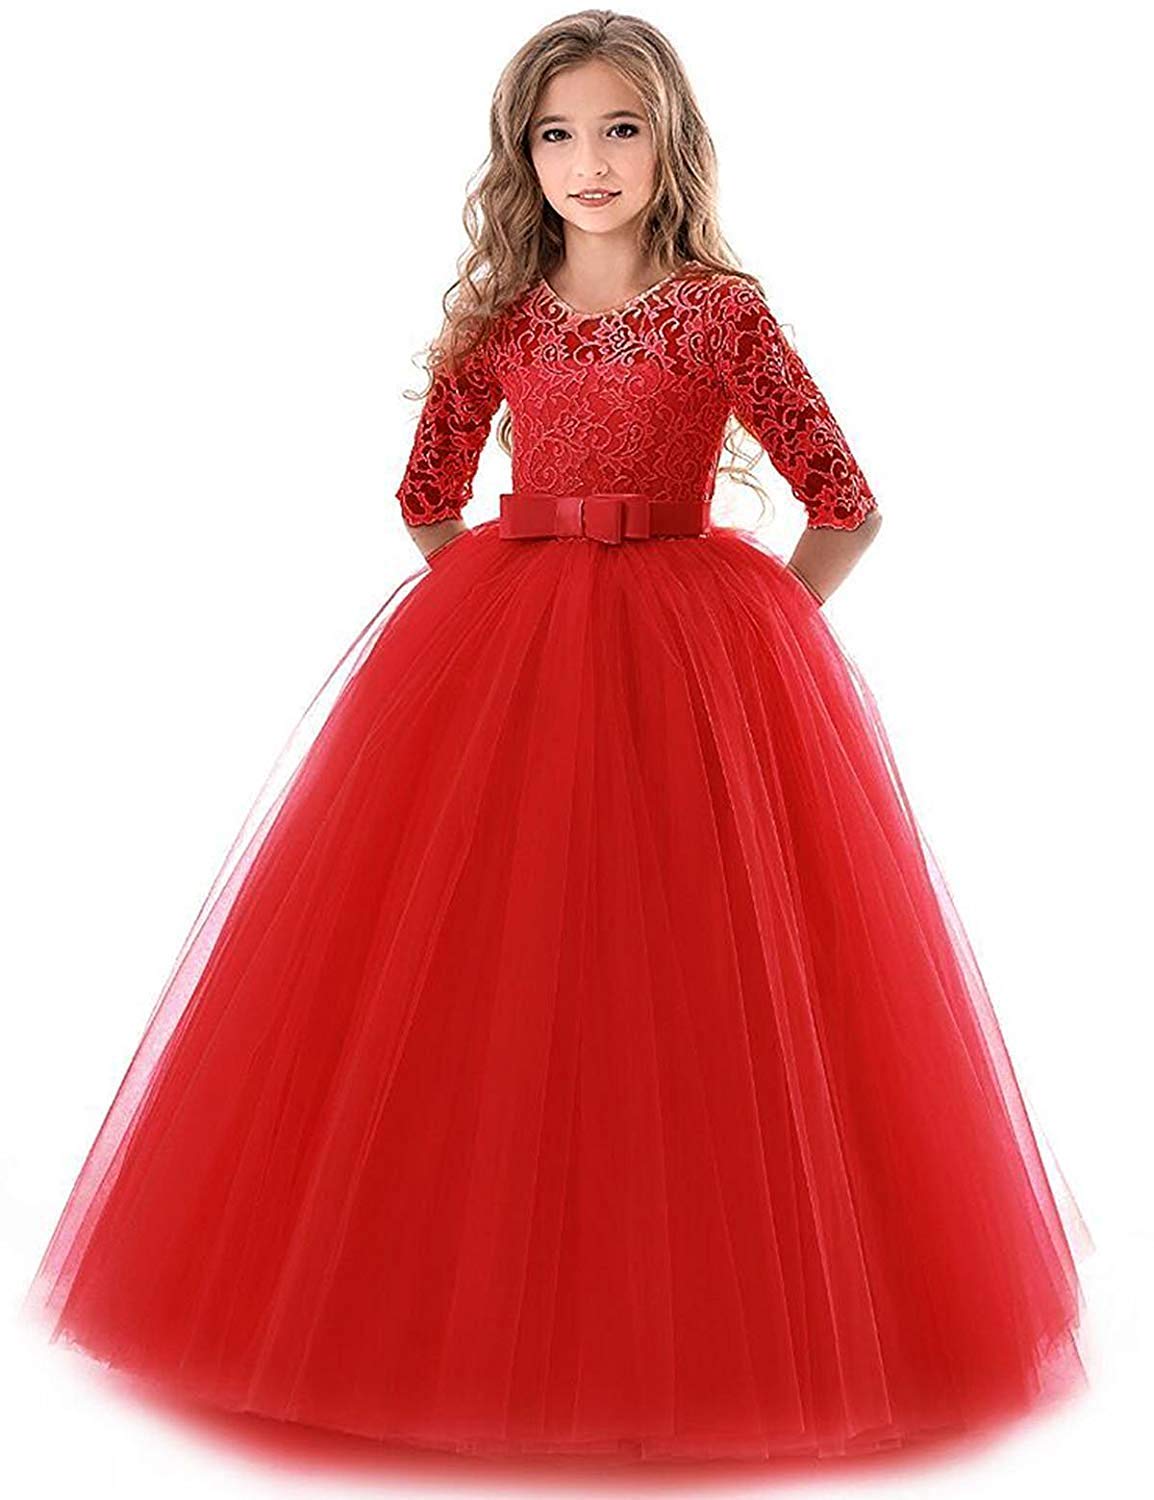 IBTOM CASTLE Blumensmädchenkleid Prinzessin Festliches Kinder Mädchen Kleid Festzug Kleider Hochzeit Partykleid rot 9-10 Jahre